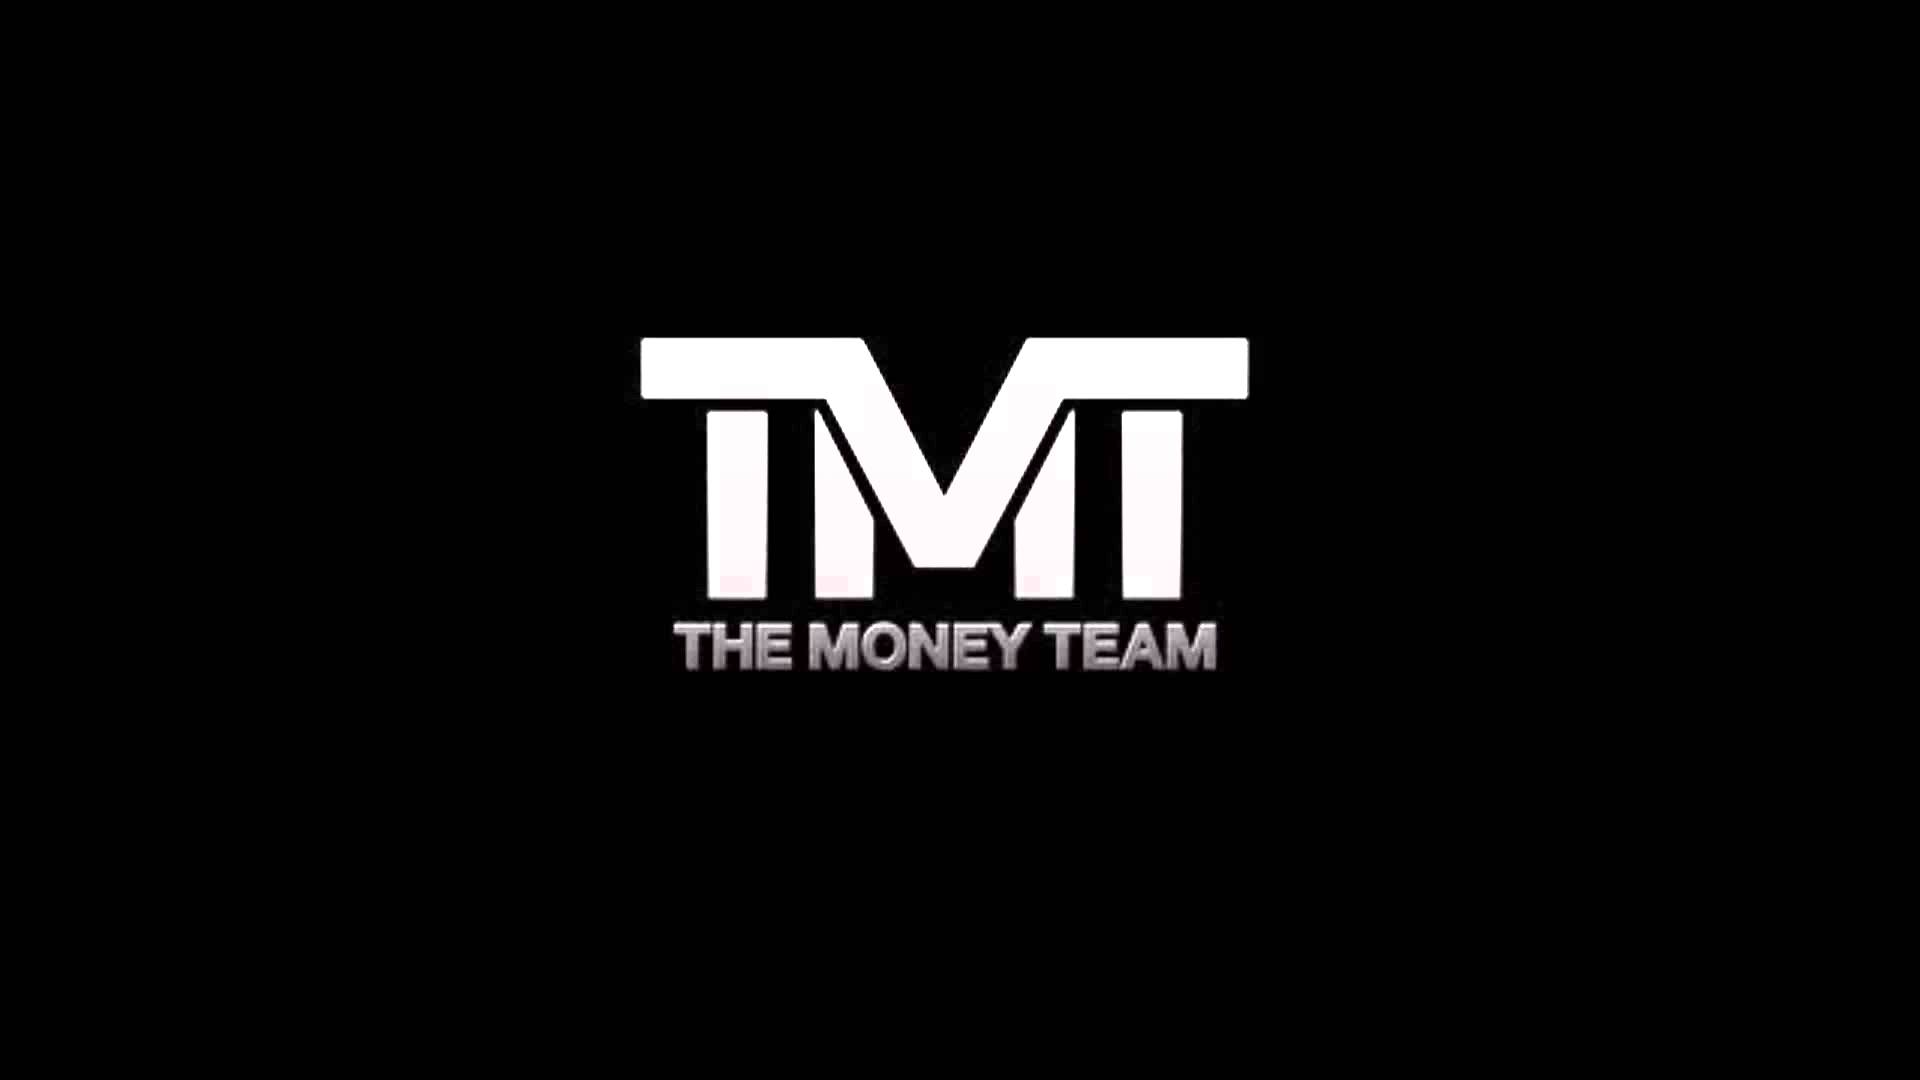 TMT Logo - TMT Wallpaper